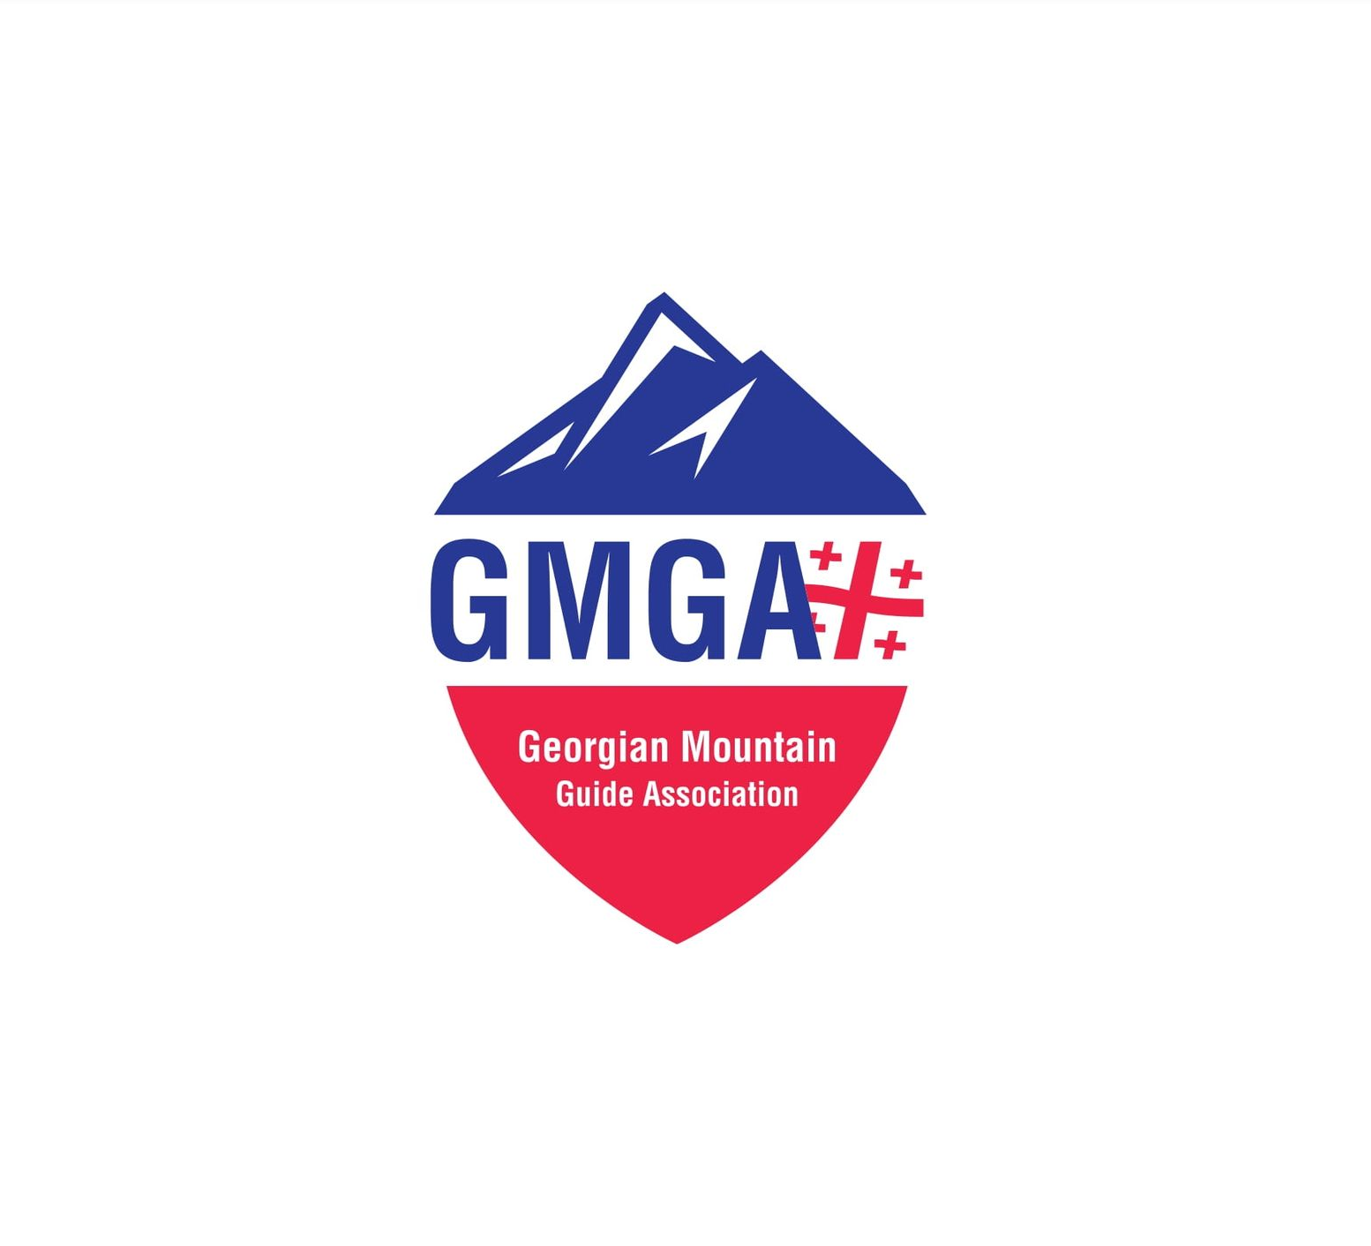 Georgian Mountain Guide Association